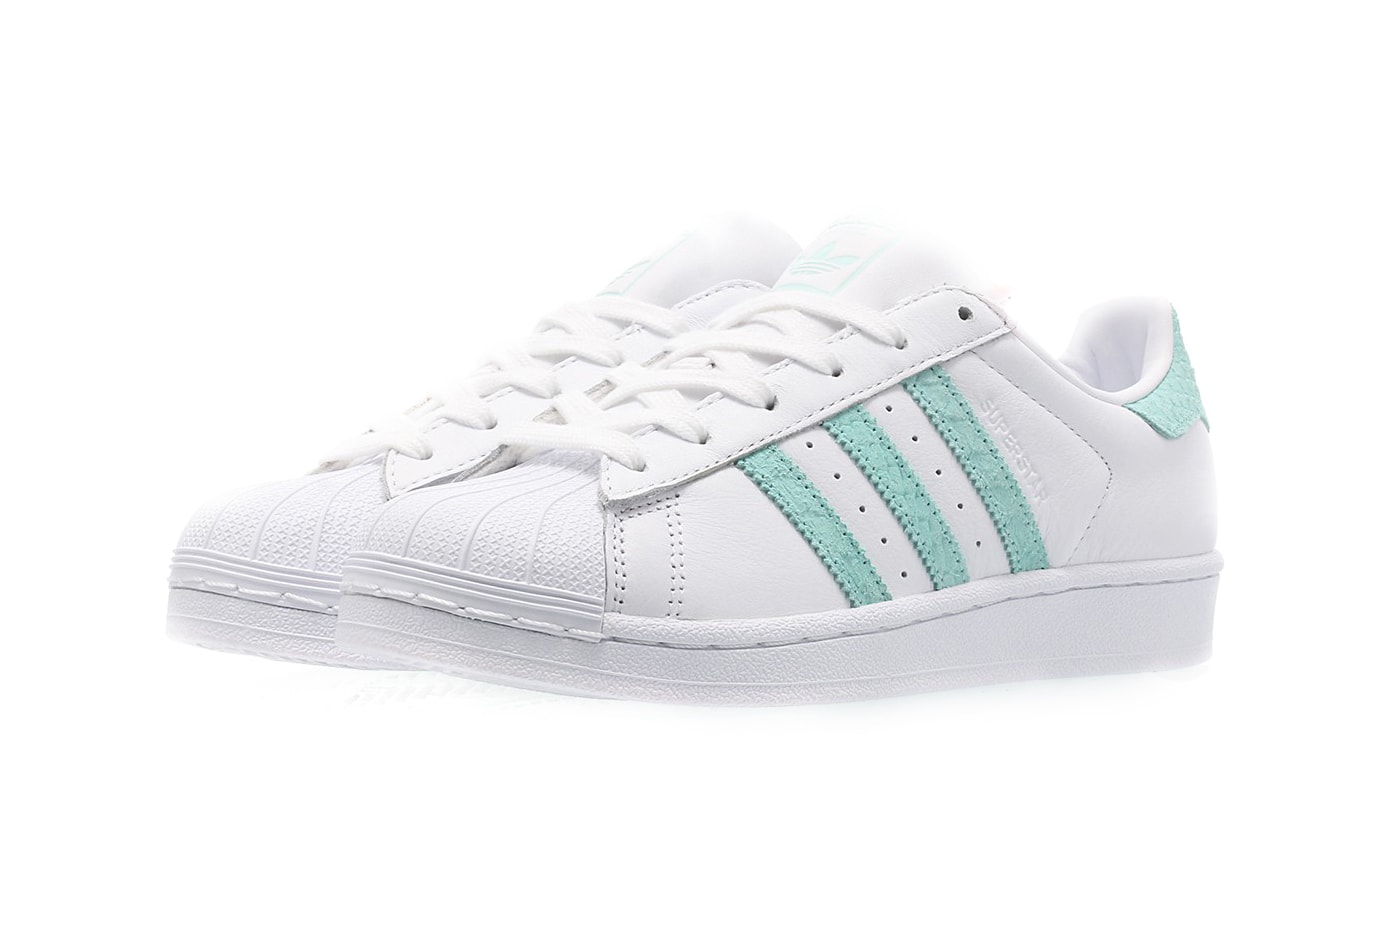 Adidas Originals Superstar Trainers - White/Green